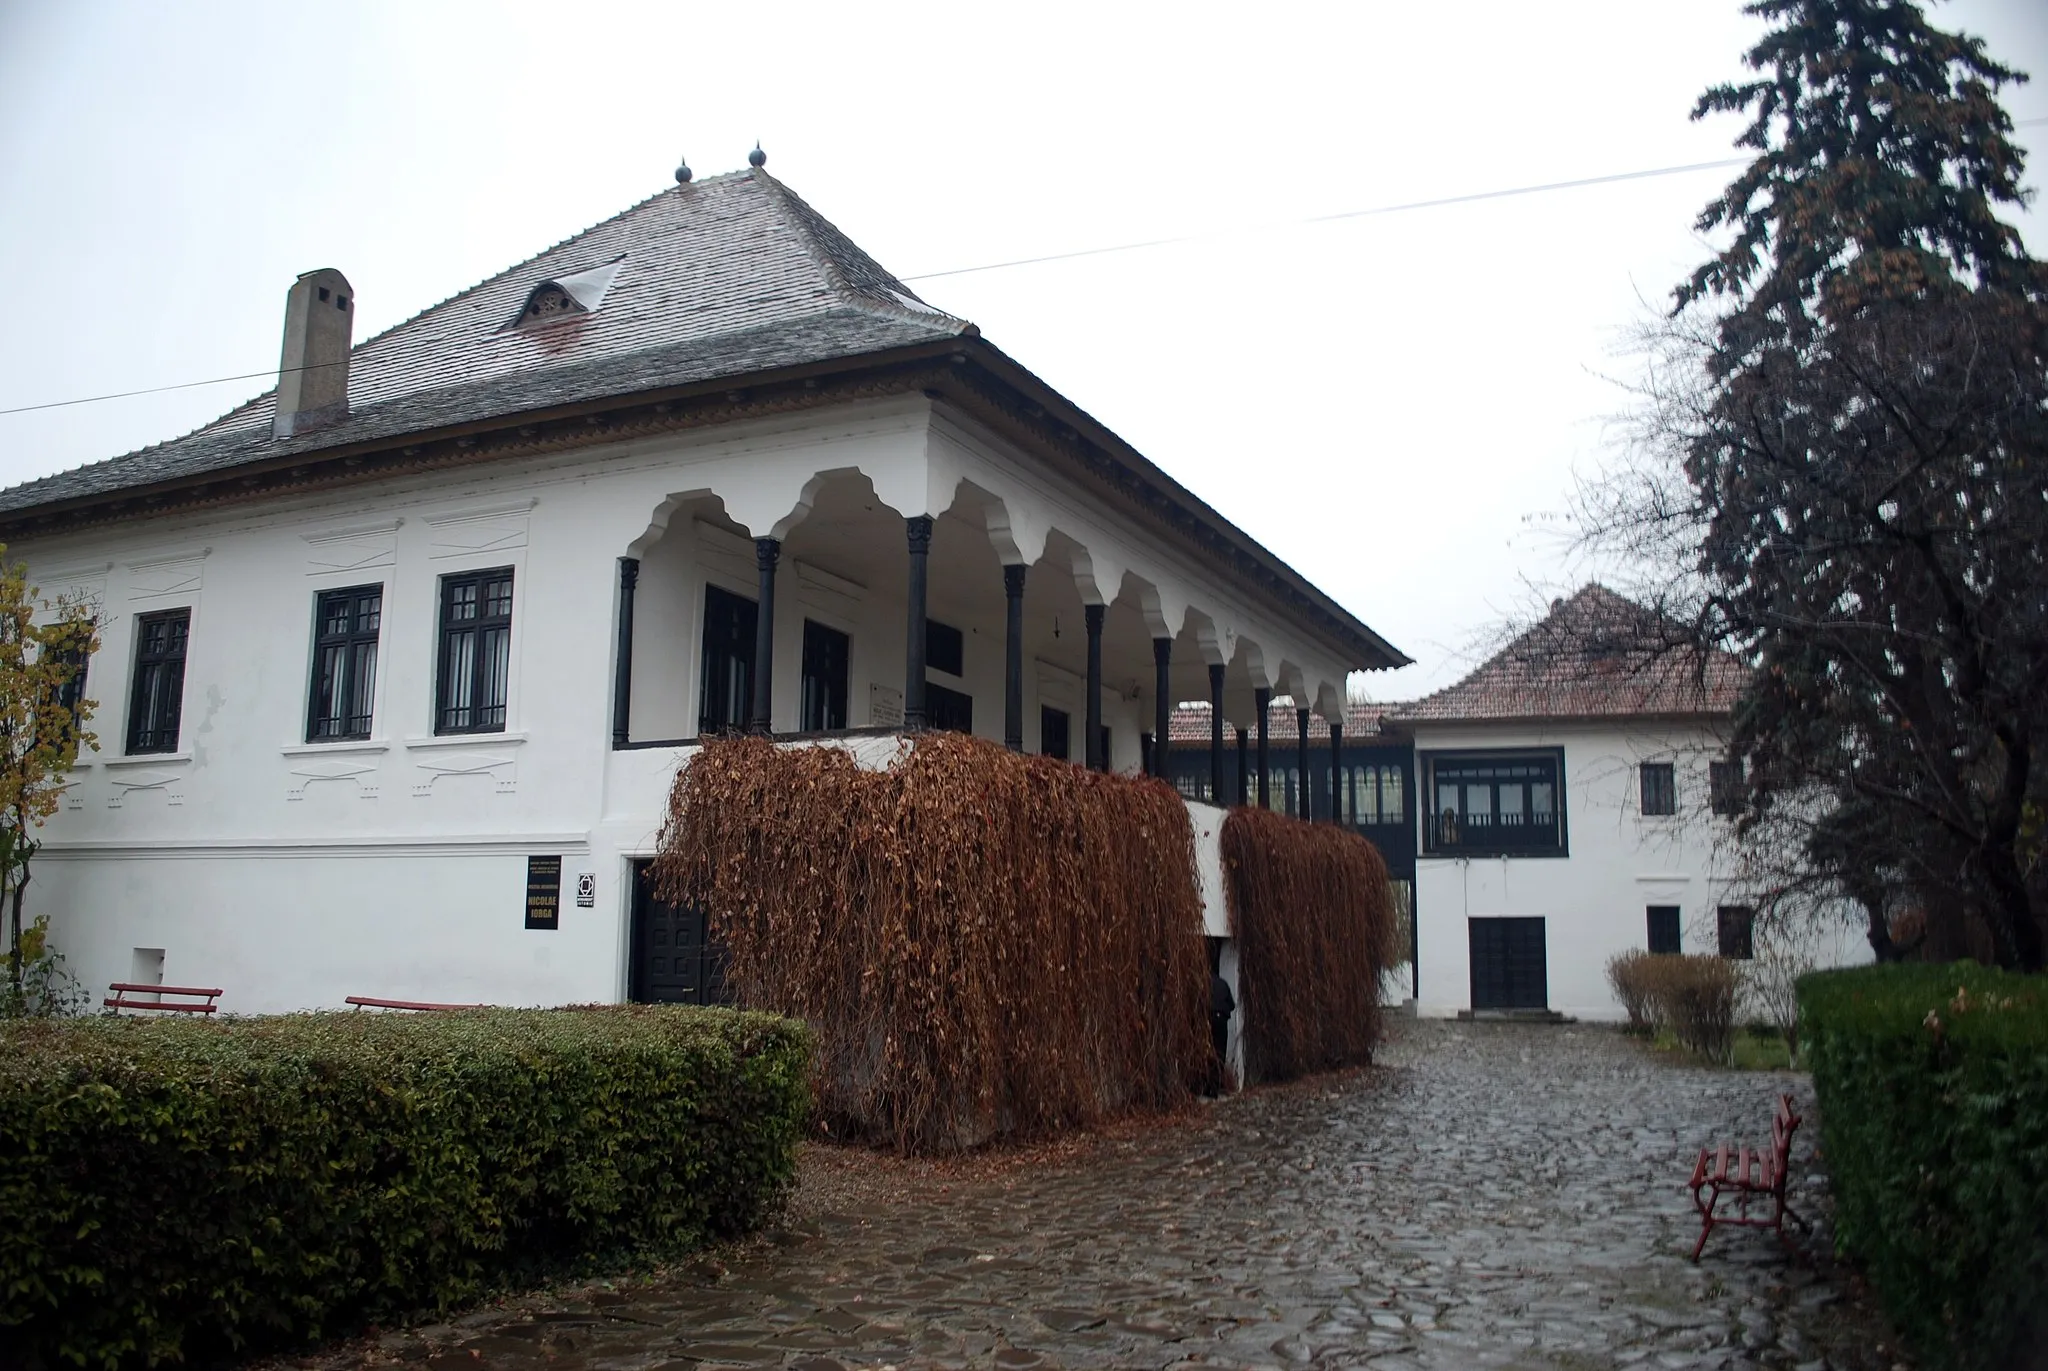 Photo showing: The Nicolae Iorga museum in Vălenii de Munte, Romania